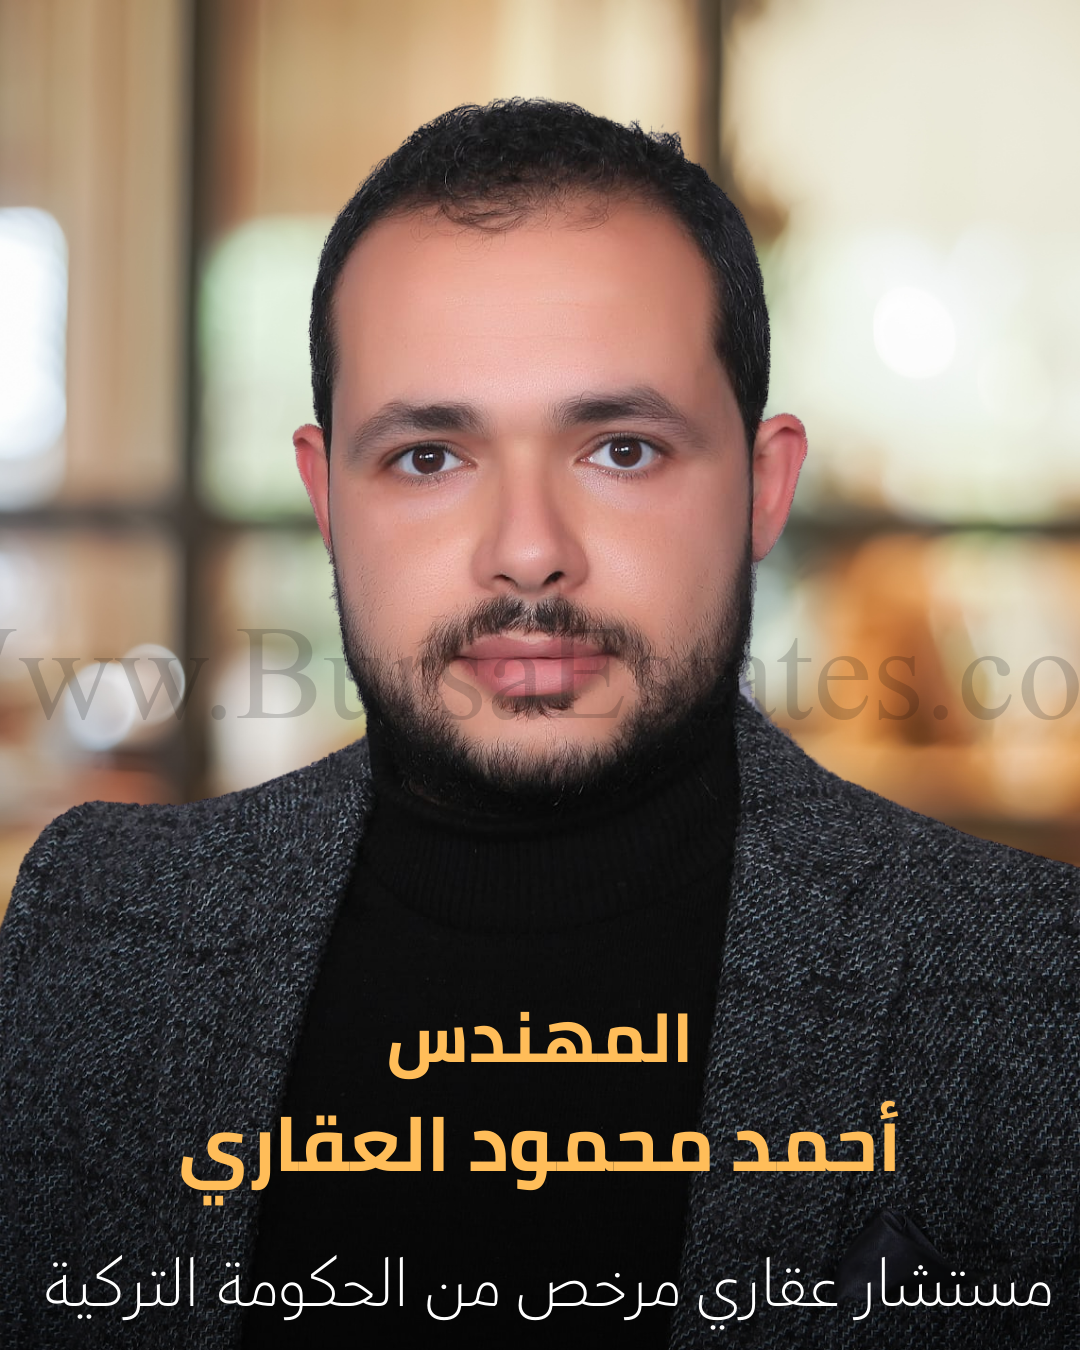 www.bursaestates.com أحمد محمود العقاري